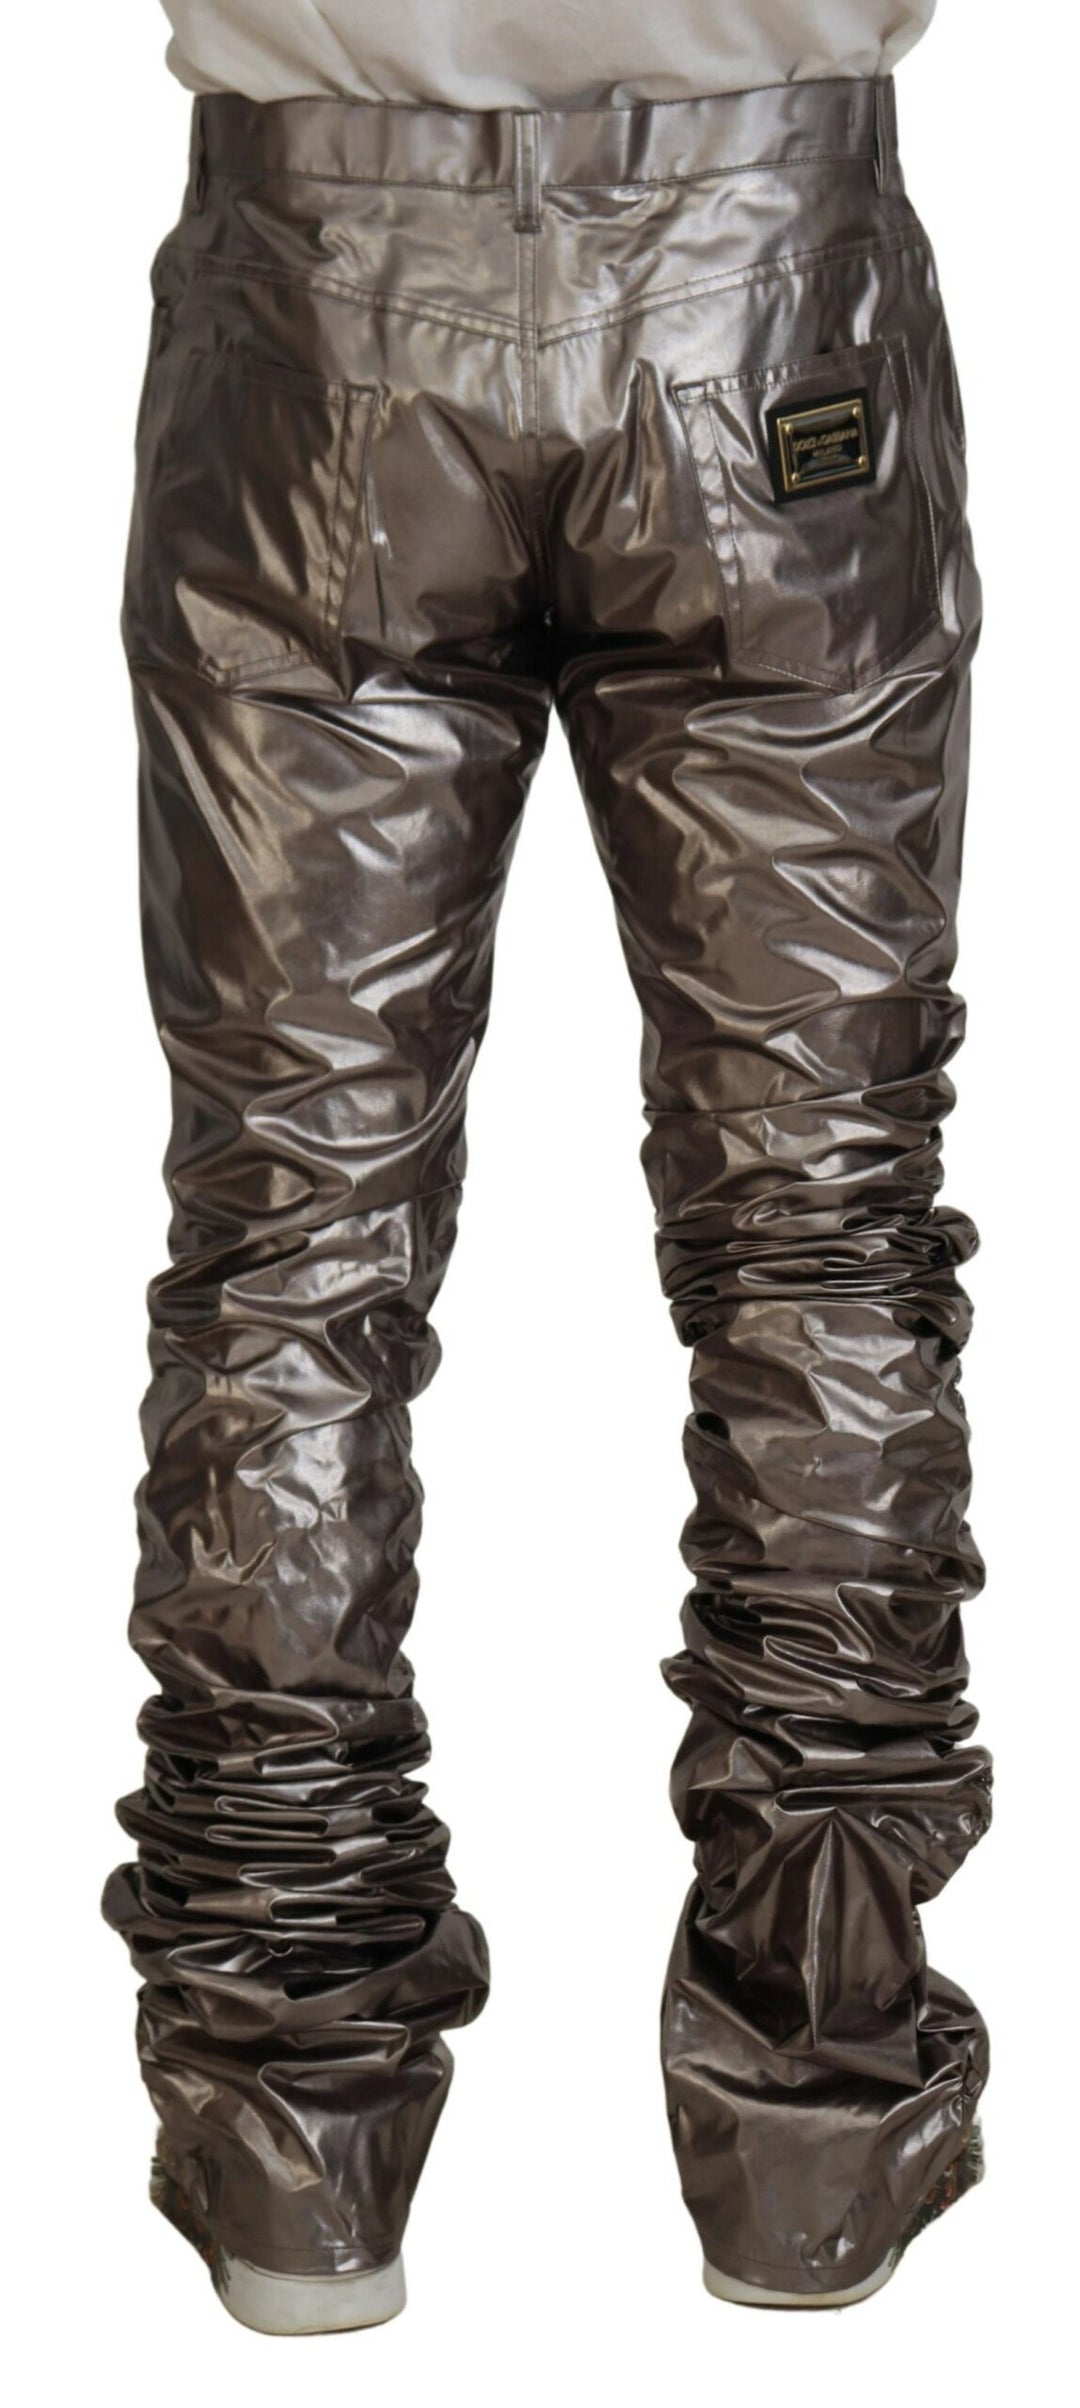 Dolce & gabbana Silver Metallic Nylon Stretch Pants